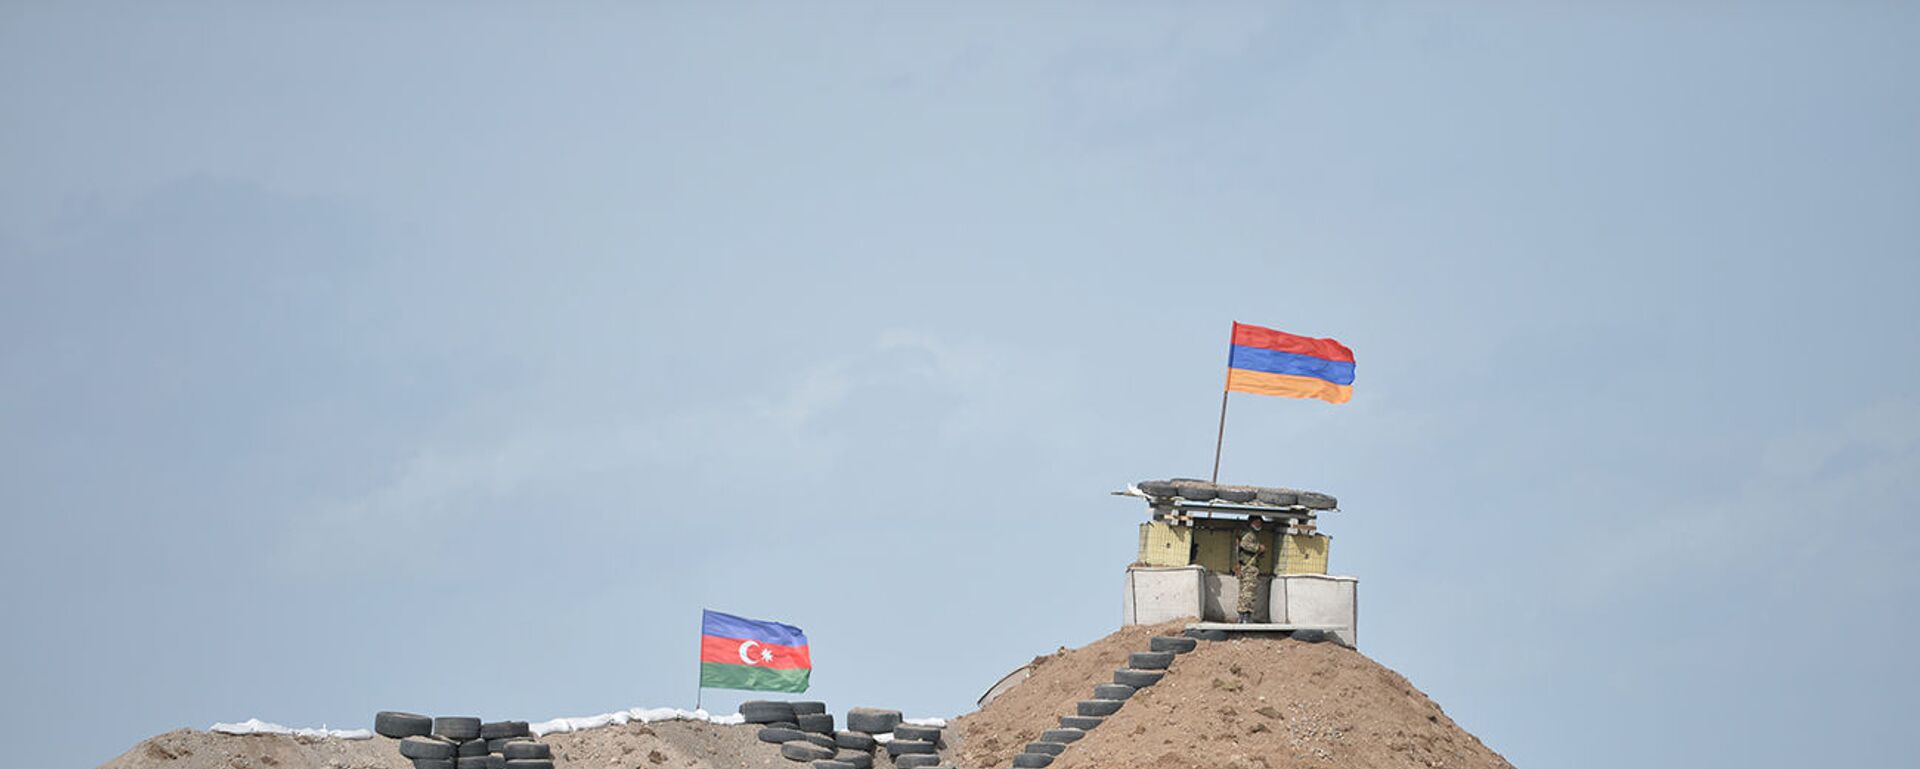 Военные посты на армянсо-азербайджанской границе - Sputnik Արմենիա, 1920, 11.06.2021